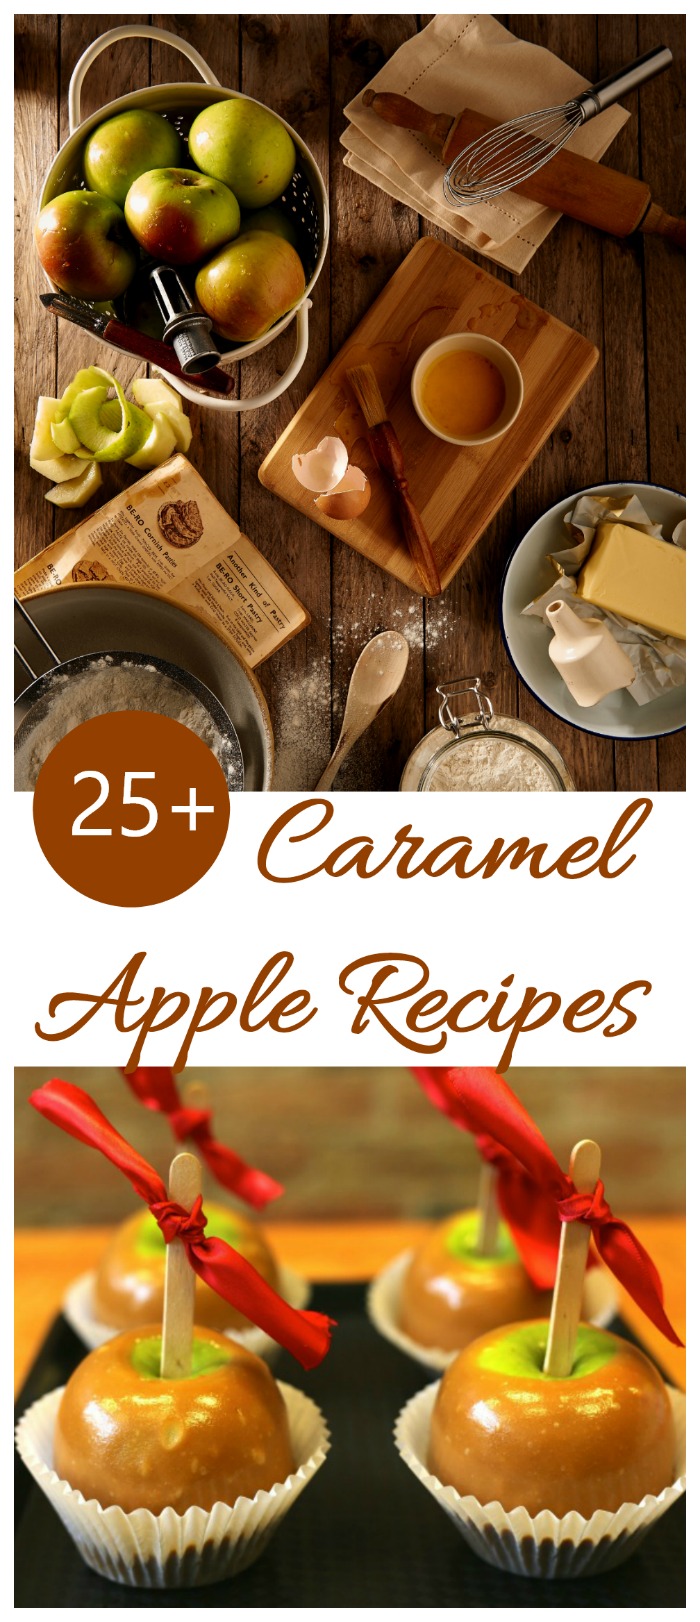 Recepty na karamelová jablka - karamelové jablečné dezerty a pochoutky